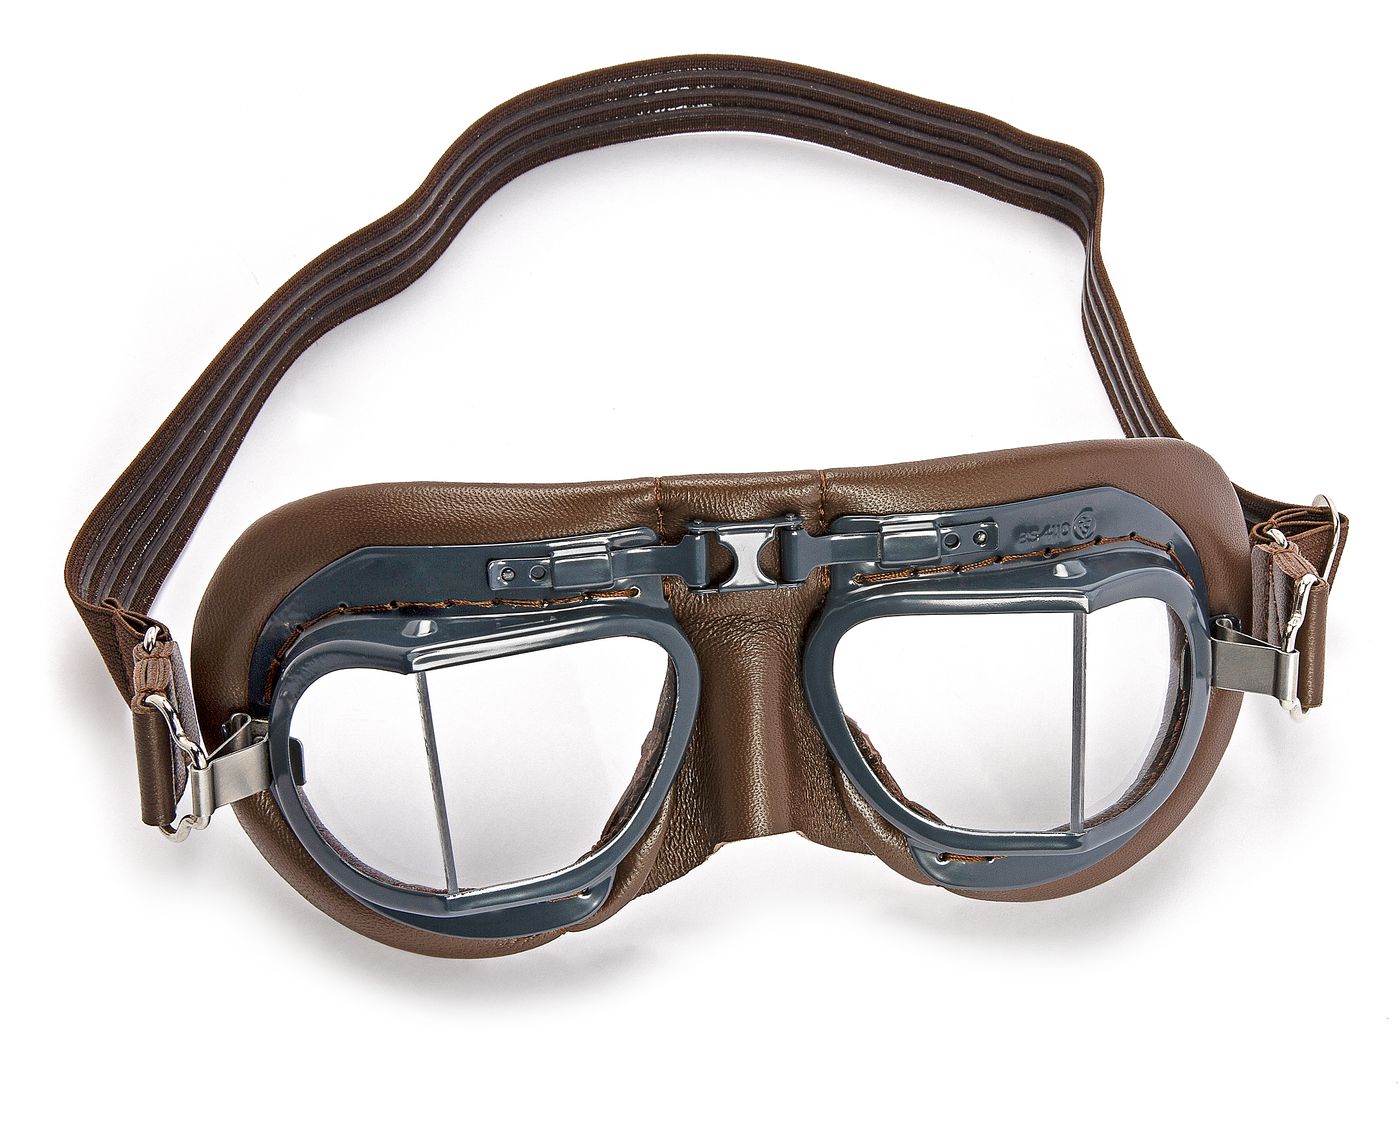 Fliegerbrille
Goggles
Lunettes pour le pilote
Vliegerbril
Gaffas